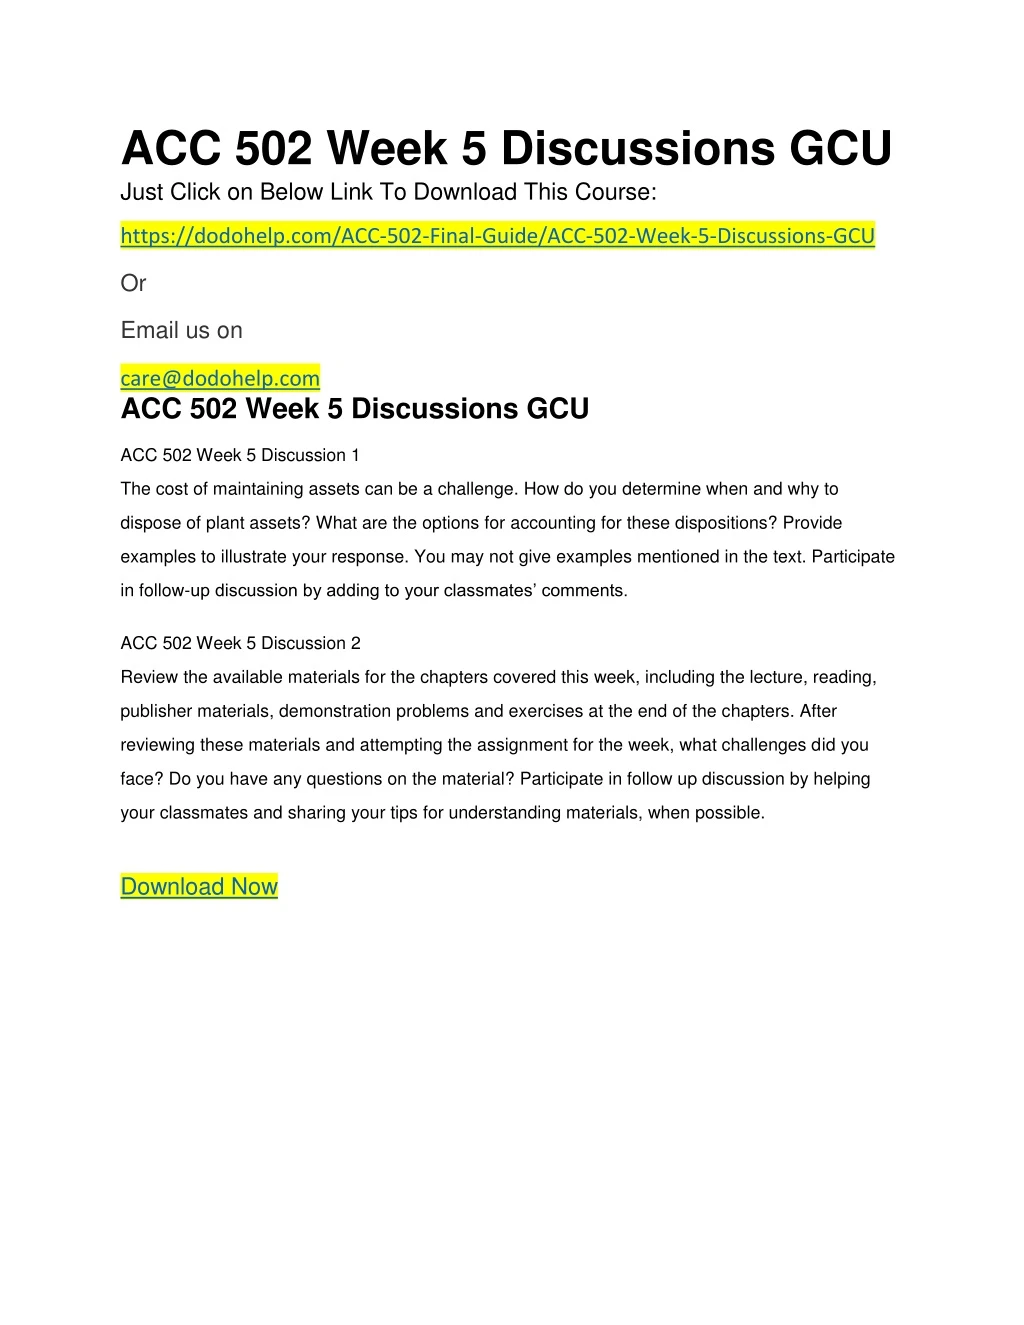 acc 502 week 5 discussions gcu just click